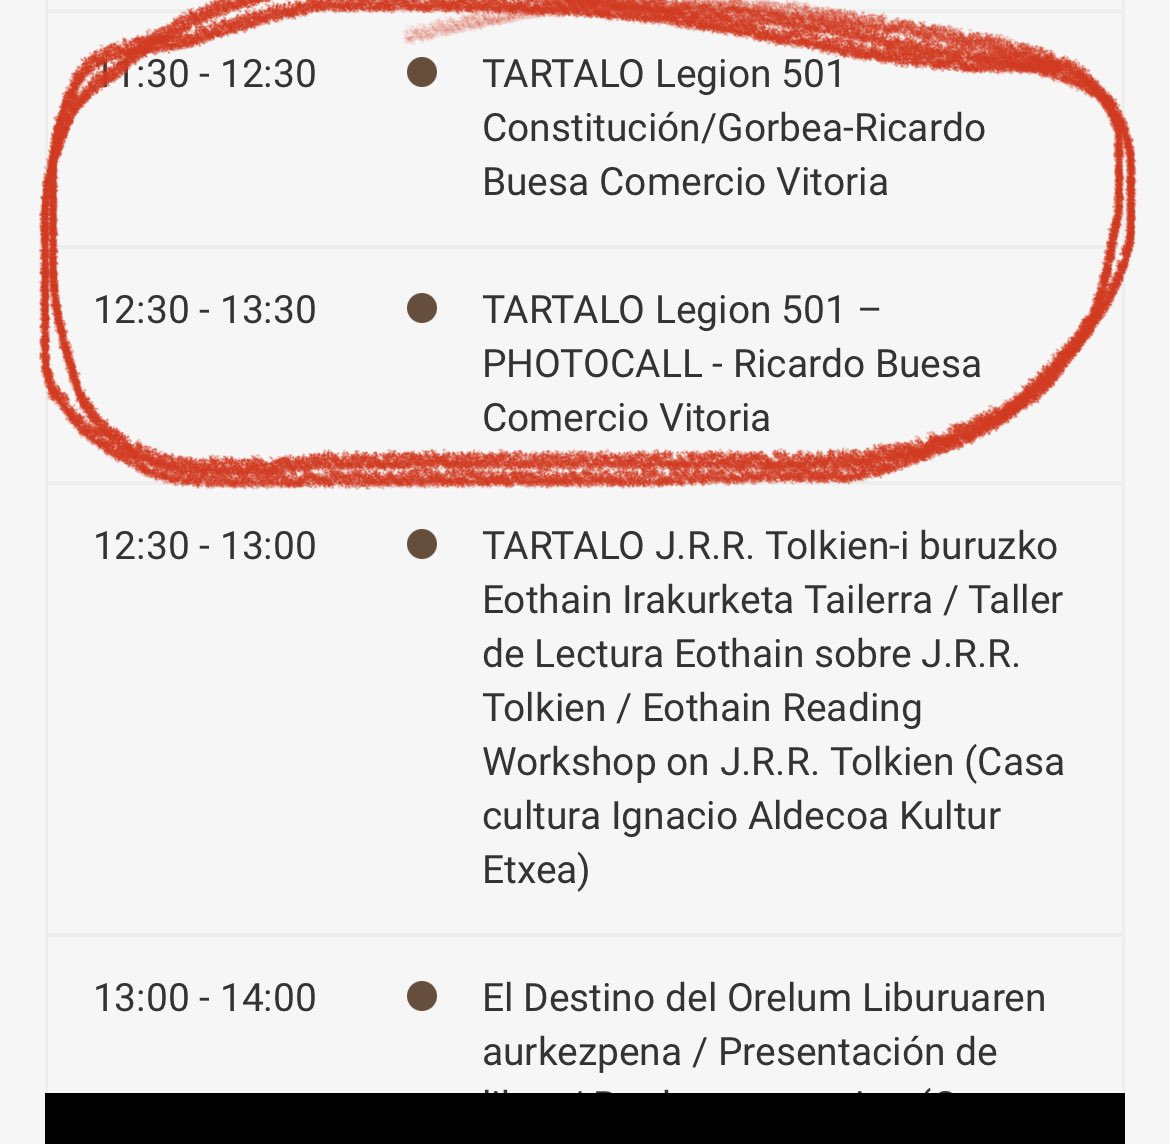 Gracias a @halabediPIXEL por ponerme tras la pista 🙏🏻 Es un festival; “Tartalo. I Semana de lo fantástico en las Artes en Vitoria-Gasteiz”. El desfile es una de las actividades: tartalogasteiz.com/es/home-spanis… #PorSiOsInteresa